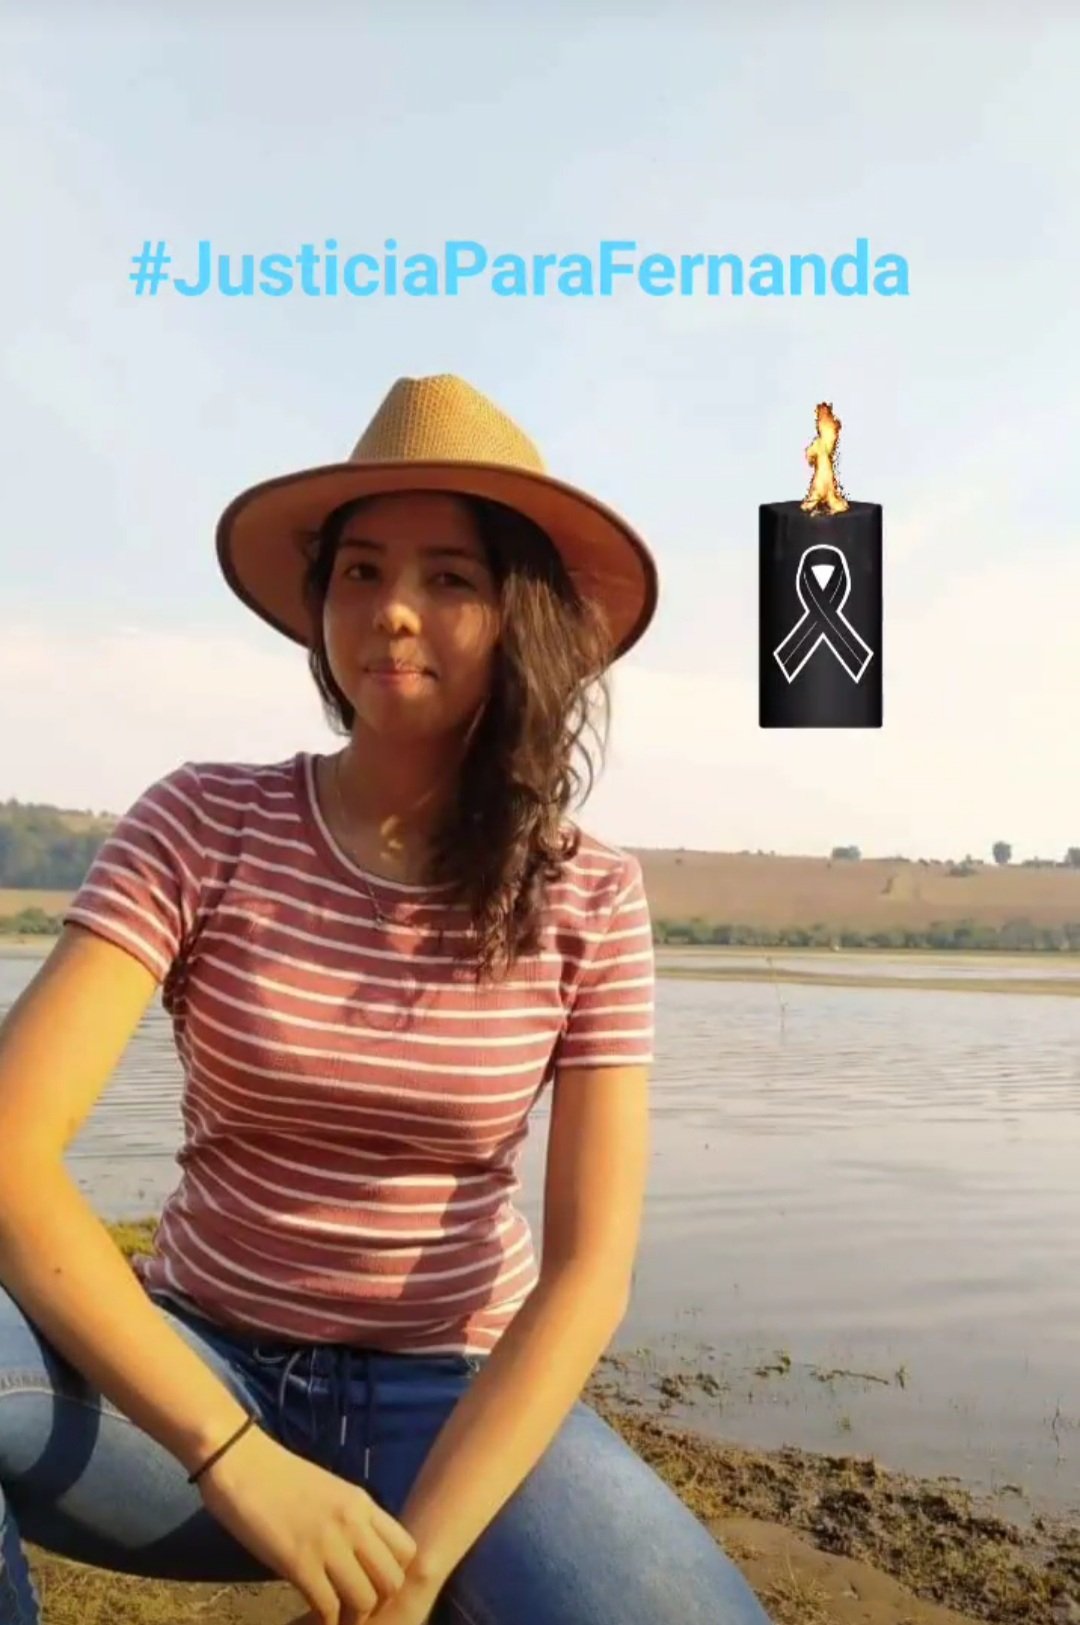 Activistas y manifestantes pidieron justicia para Fernanda, quien fue víctima de feminicidio (Foto: Twitter/@IVONNEROMERO16)